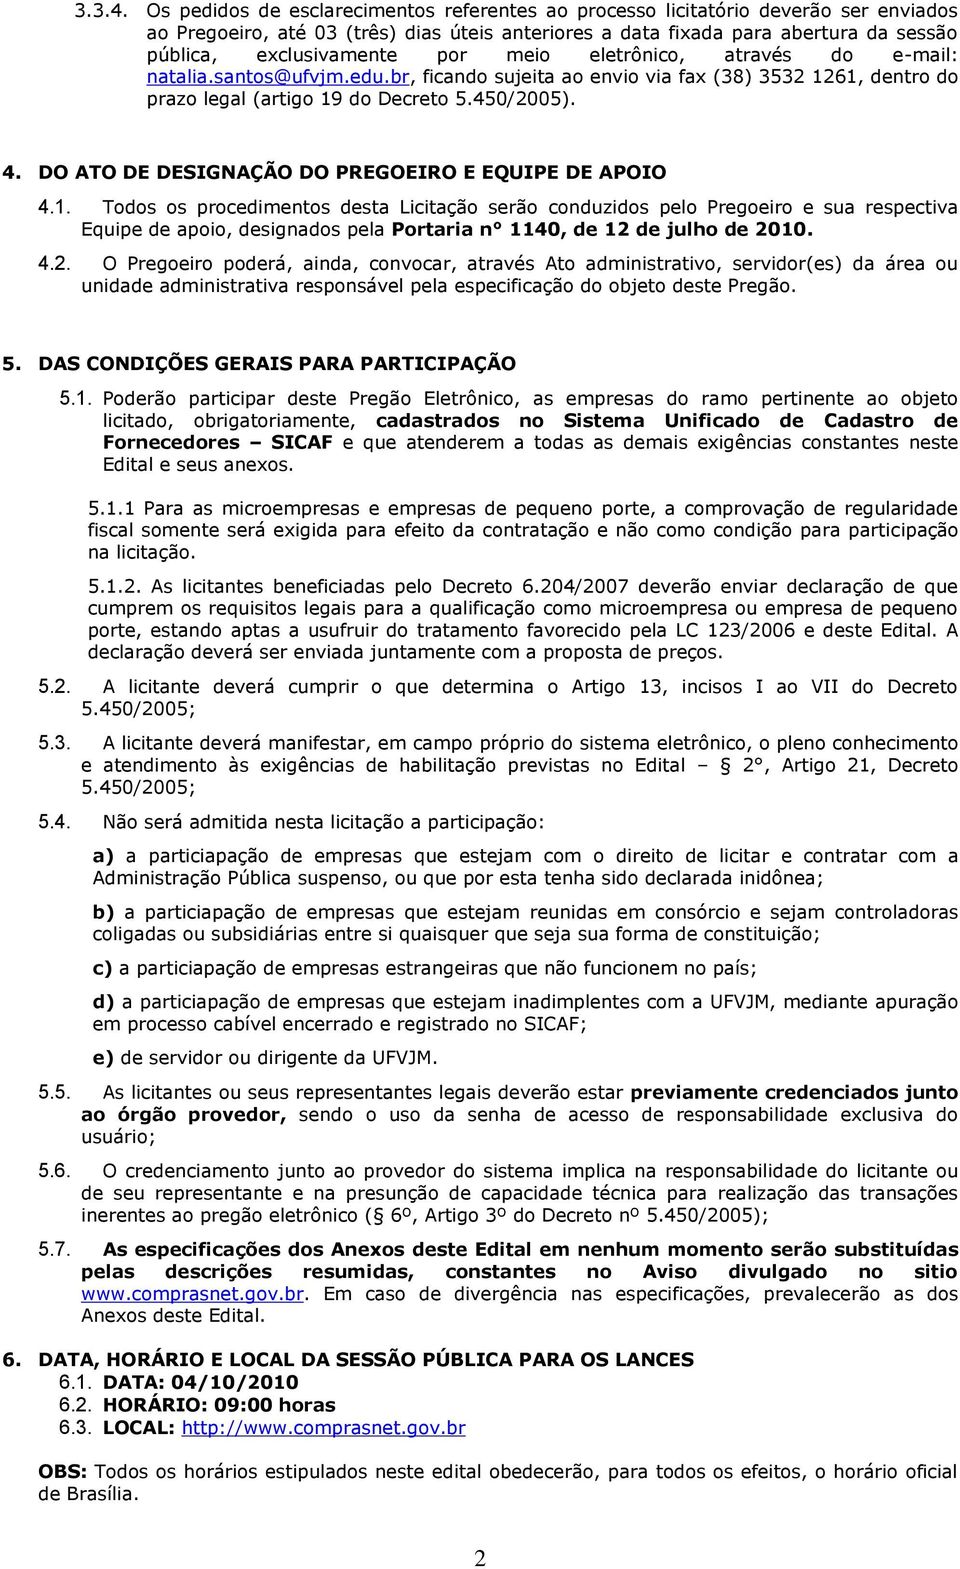 por meio eletrônico, através do e-mail: natalia.santos@ufvjm.edu.br, ficando sujeita ao envio via fax (38) 3532 1261, dentro do prazo legal (artigo 19 do Decreto 5.450/2005). 4.